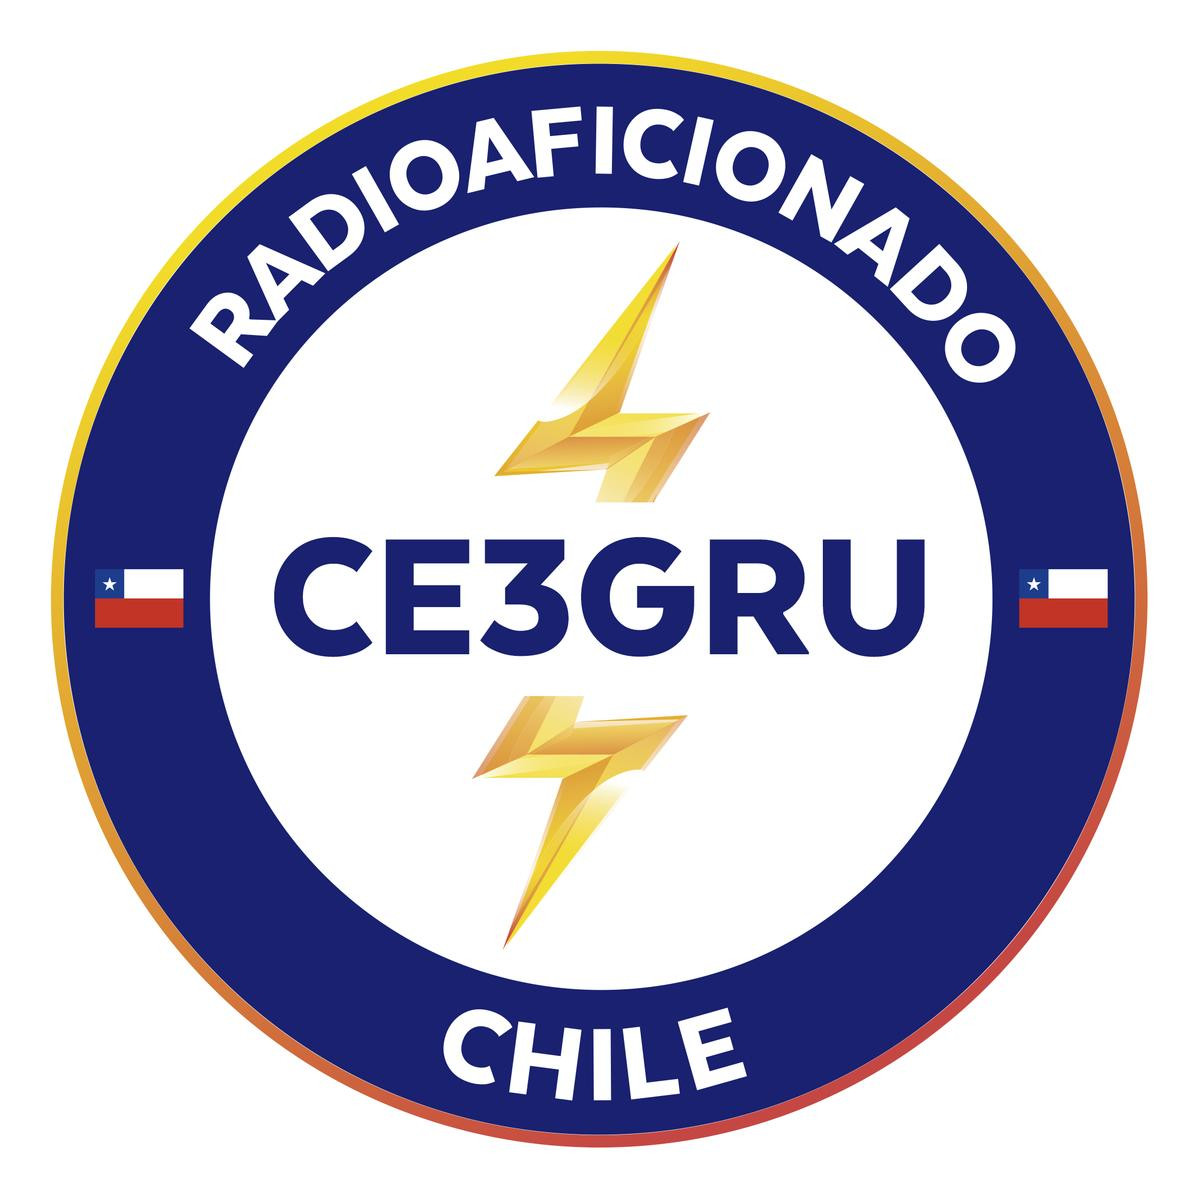 CE3GRU Santiago, Chile